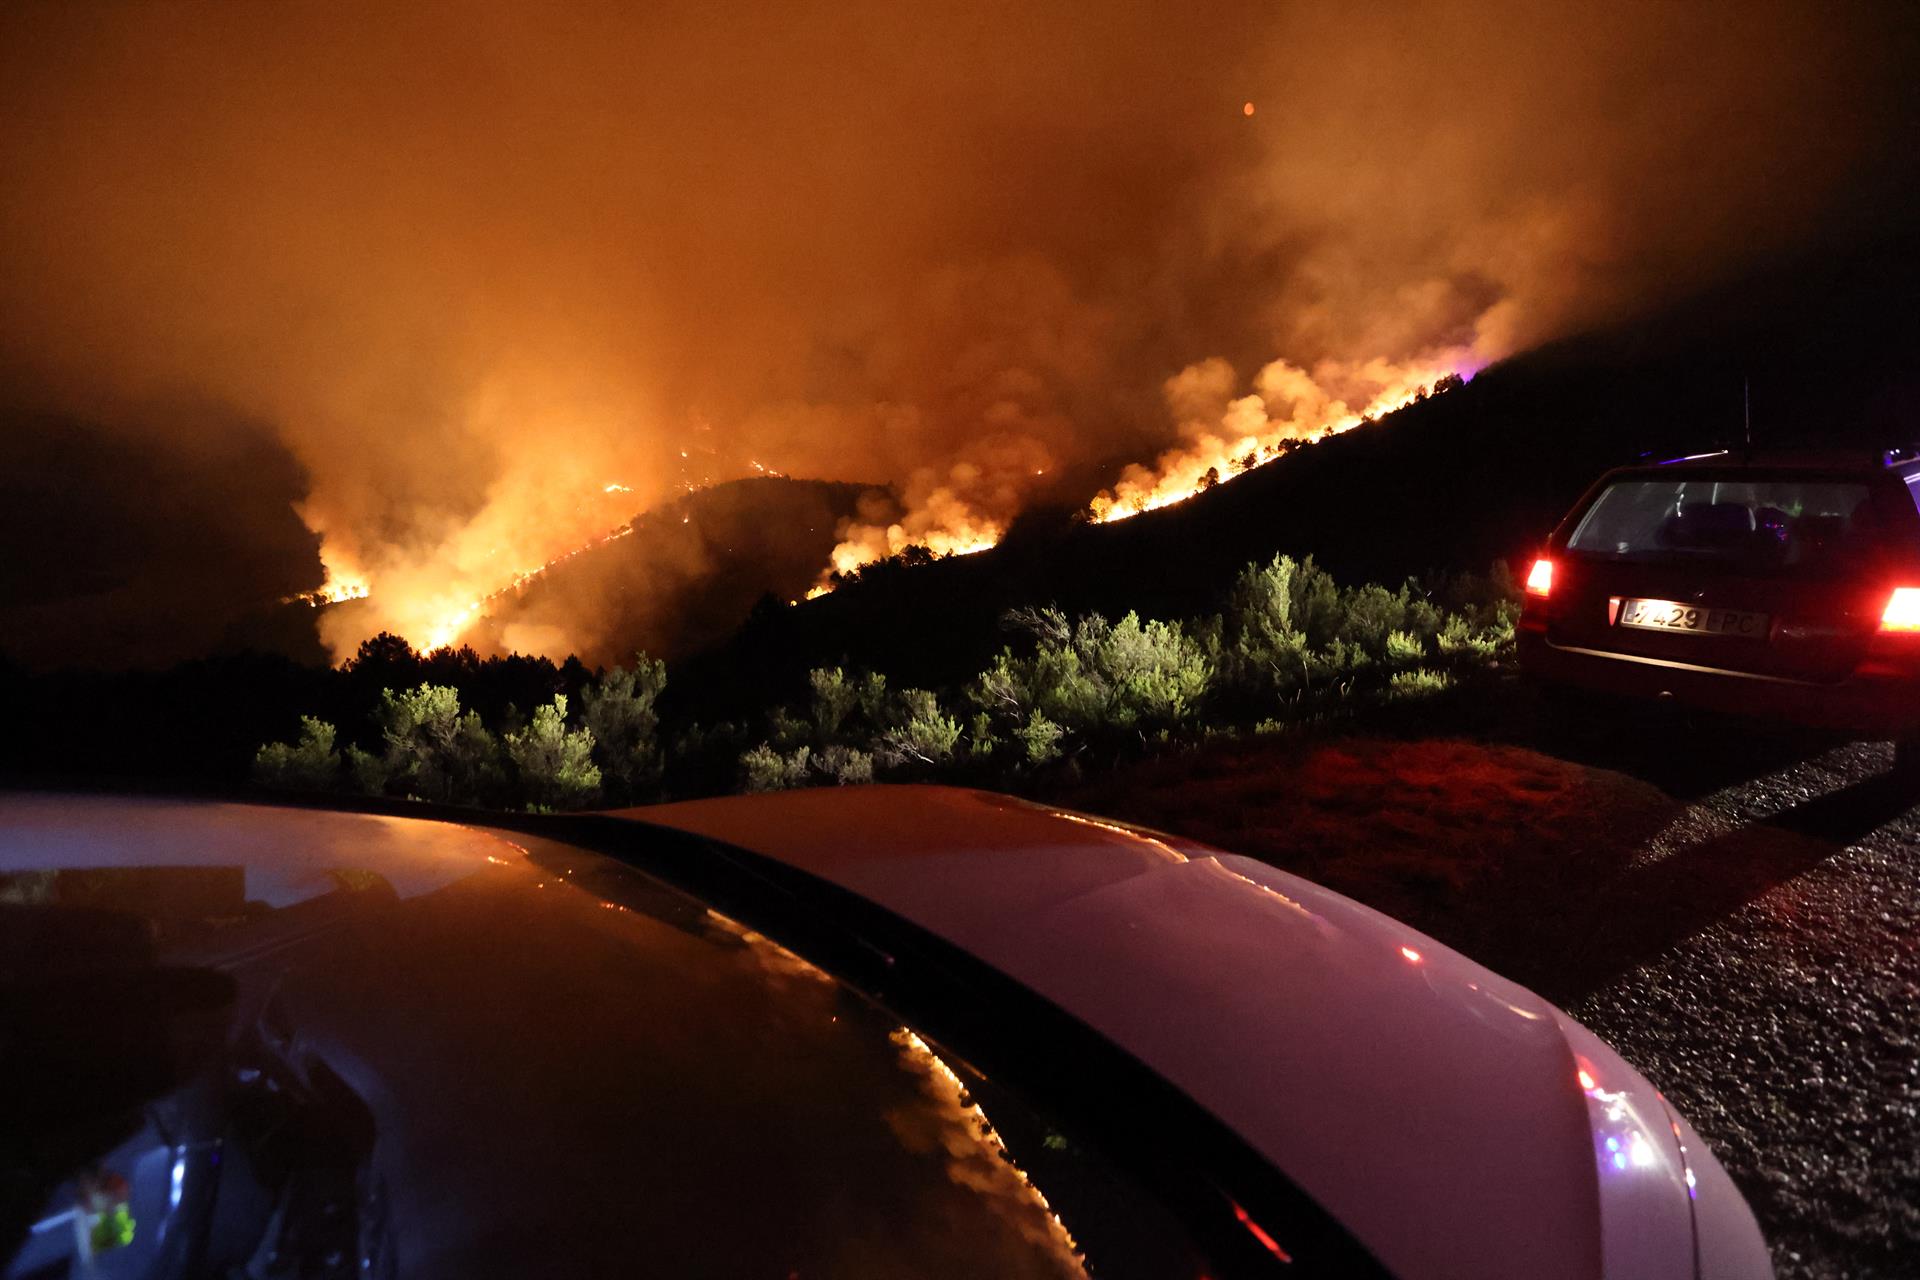 Vista del incendio de la localidad de Campobecerros, Ourense, en la madrugada de este lunes. EFE/ Sxenick